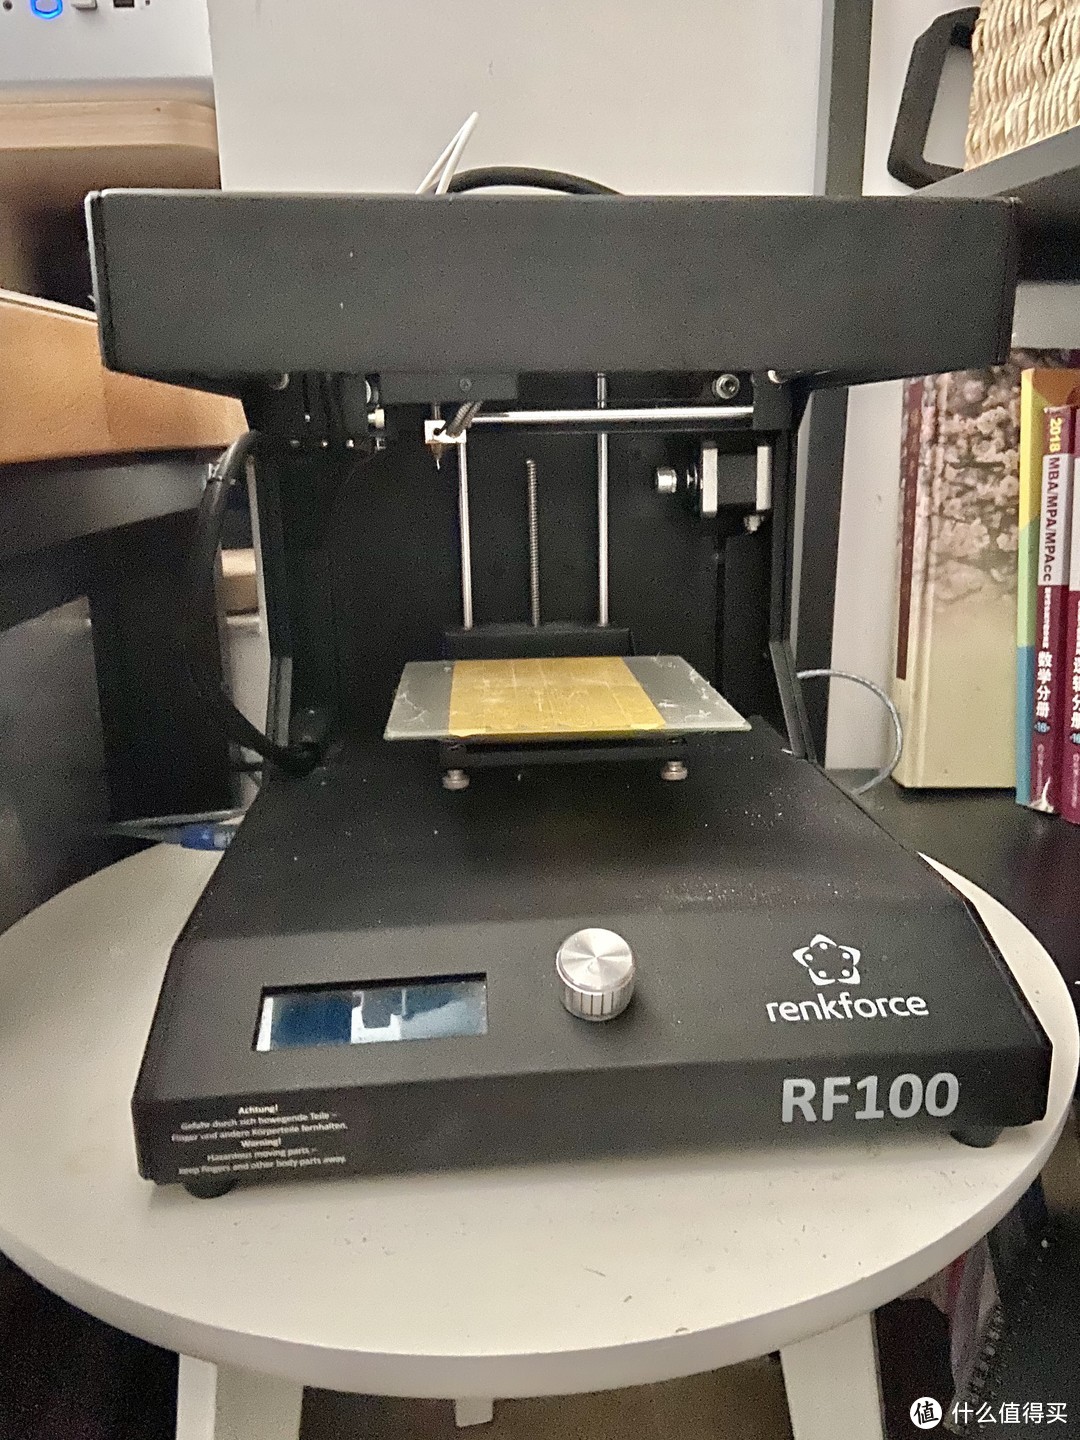 renkforce RF100 3D打印机